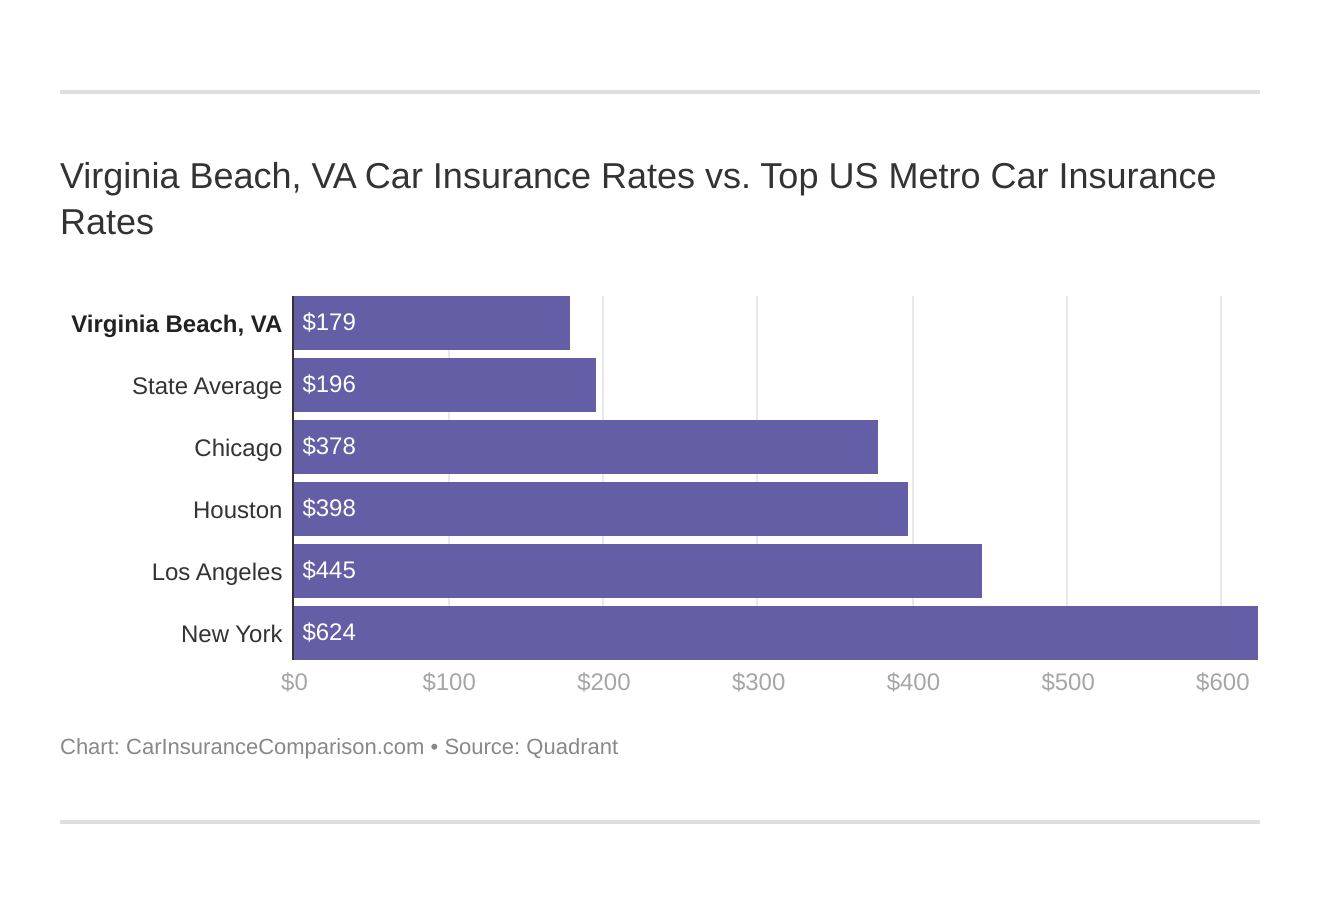 Virginia Beach, VA Car Insurance Rates vs. Top US Metro Car Insurance Rates